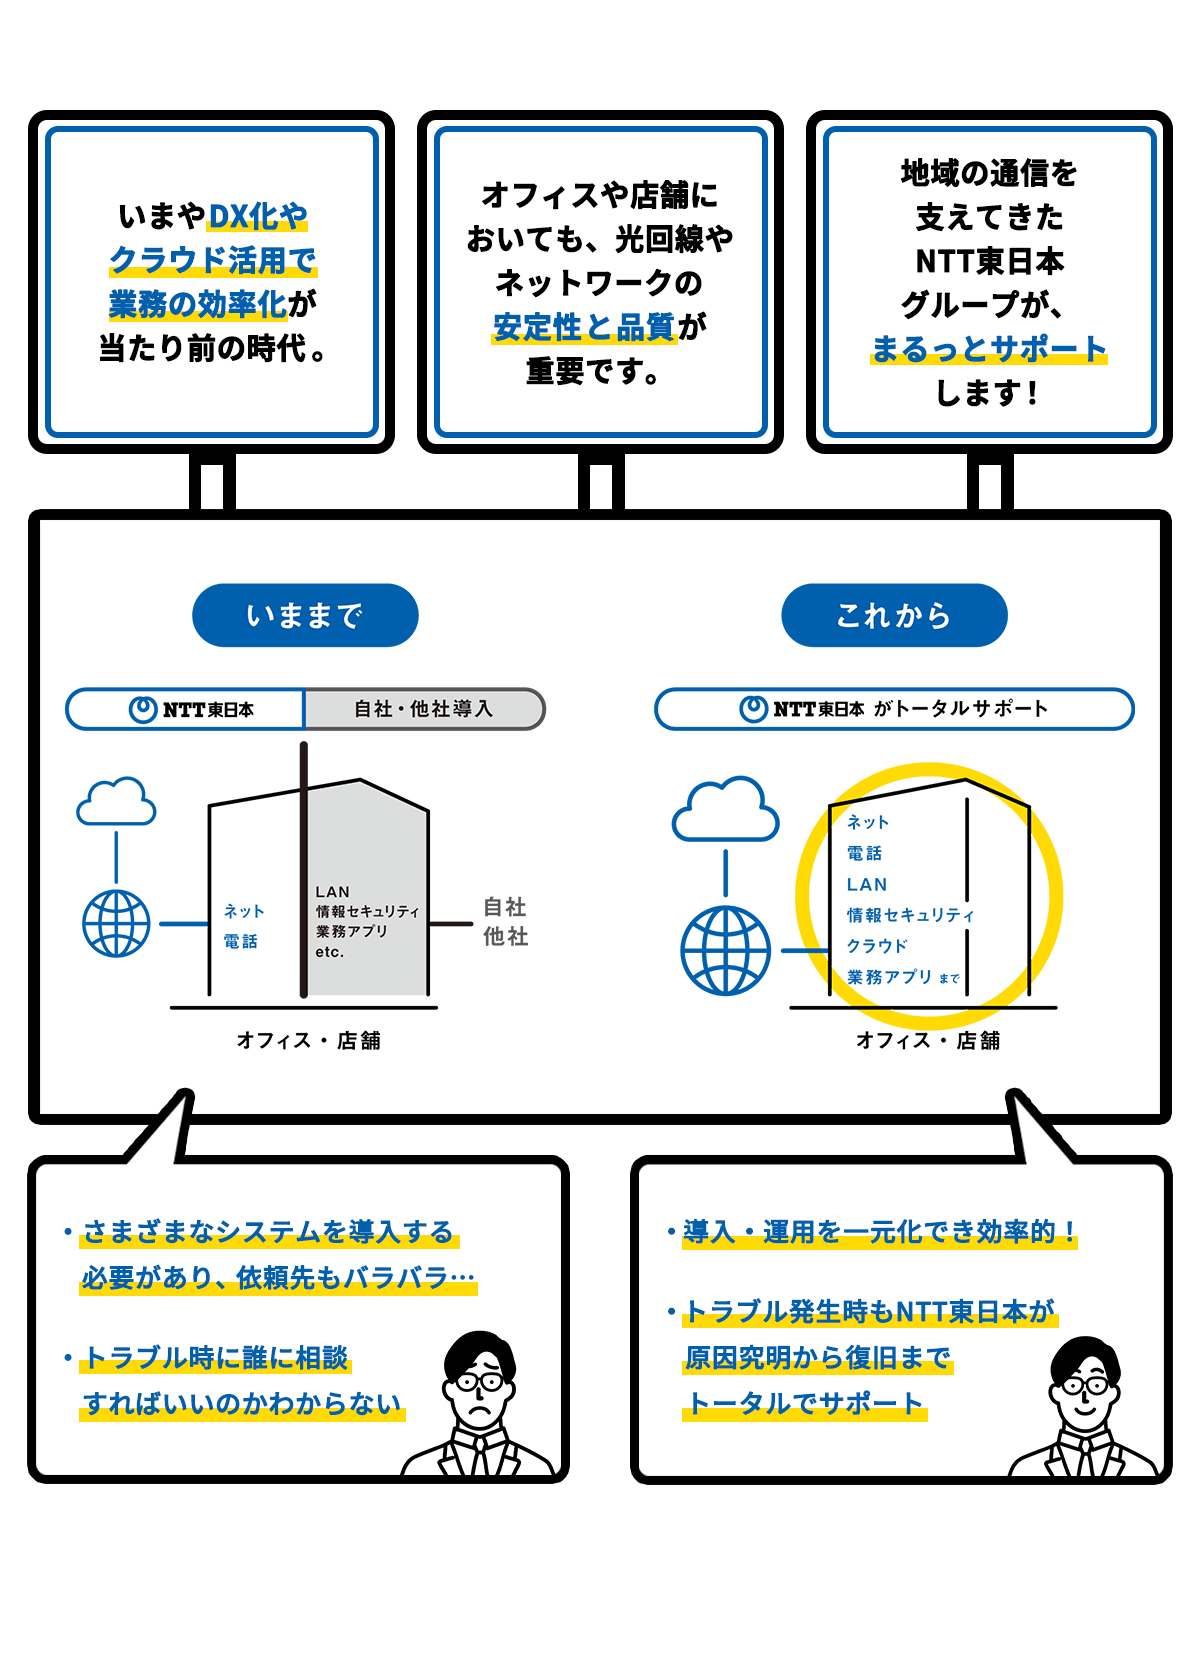 いまやDX化やクラウド活用で業務の効率化が当たり前の時代。　オフィスや店舗においても、光回線やネットワークの安定性と品質が重要です。　地域の通信を支えてきたNTT東日本グループが、まるとサポートします！　いままで　NTT東日本 オフィス・店舗 ネット 電話　自社・他社導入 LAN セキュリティ 業務アプリ etc.　自社 他社　・様々なシステムを導入する必要があり、依頼先もバラバラ…　・トラブル時に誰に相談すればいいのかわからない　これから　NTT東日本がトータルサポート オフィス・店舗 ネット＋電話＋LAN セキュリティ クラウド 業務アプリ まで　・導入・運用を一元化でき効率的！　・トラブル発生時もNTT東日本が原因究明から復旧までトータルでサポート